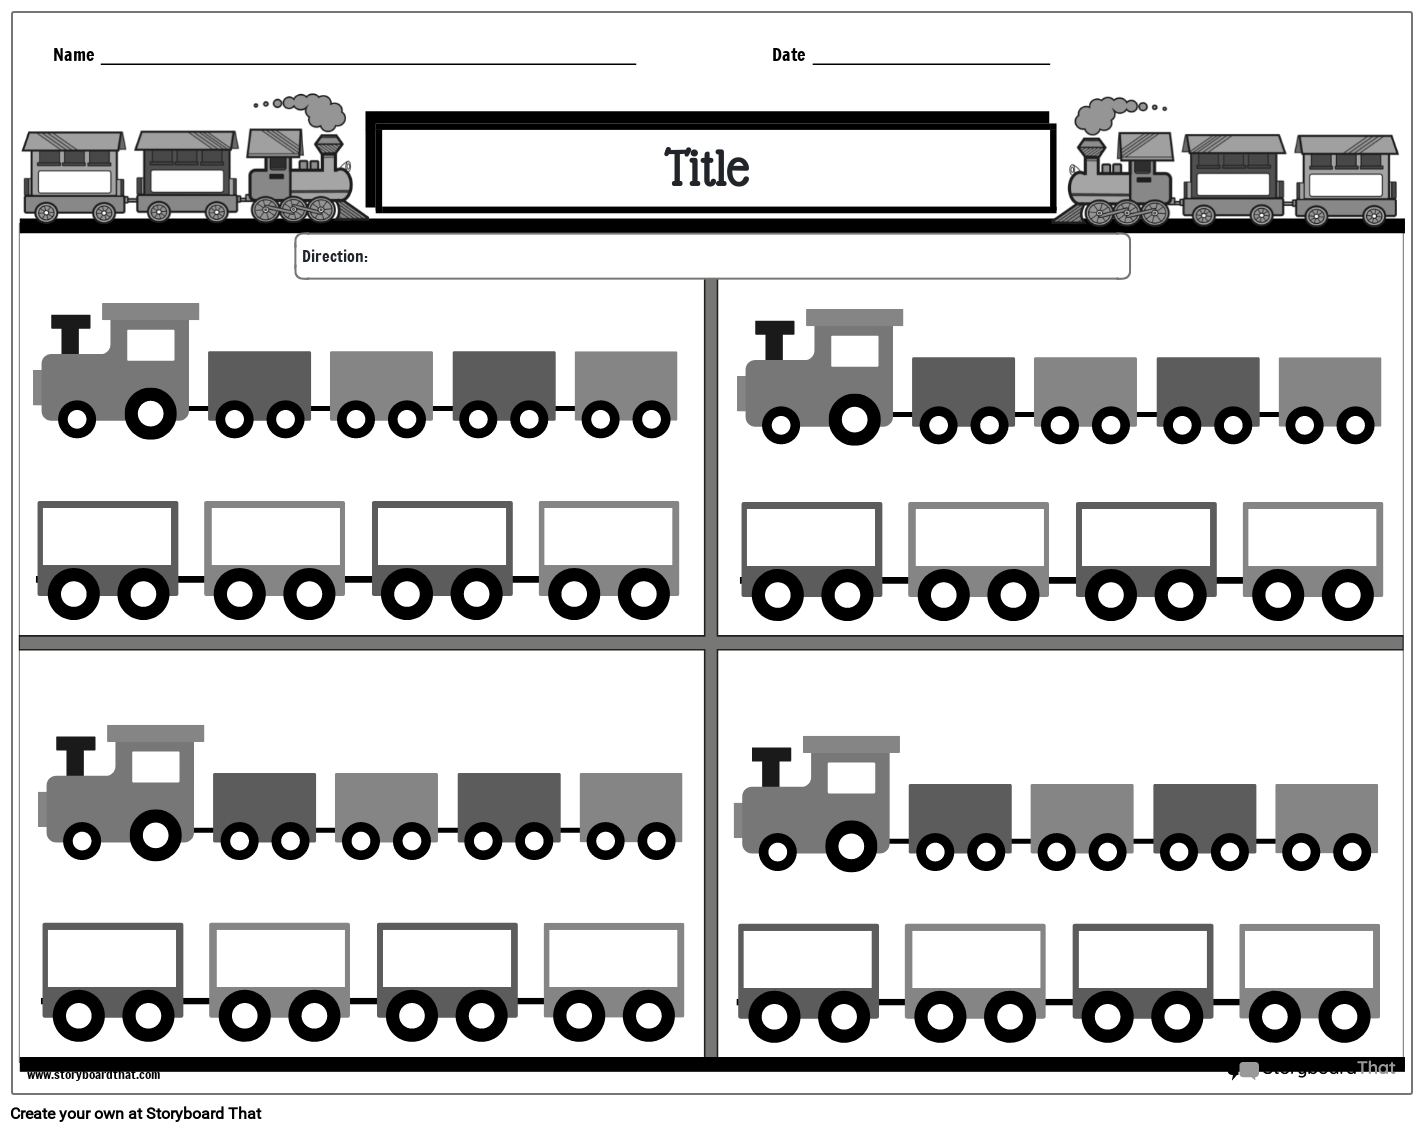 Train-themed Printable Ordering Numbers Worksheet